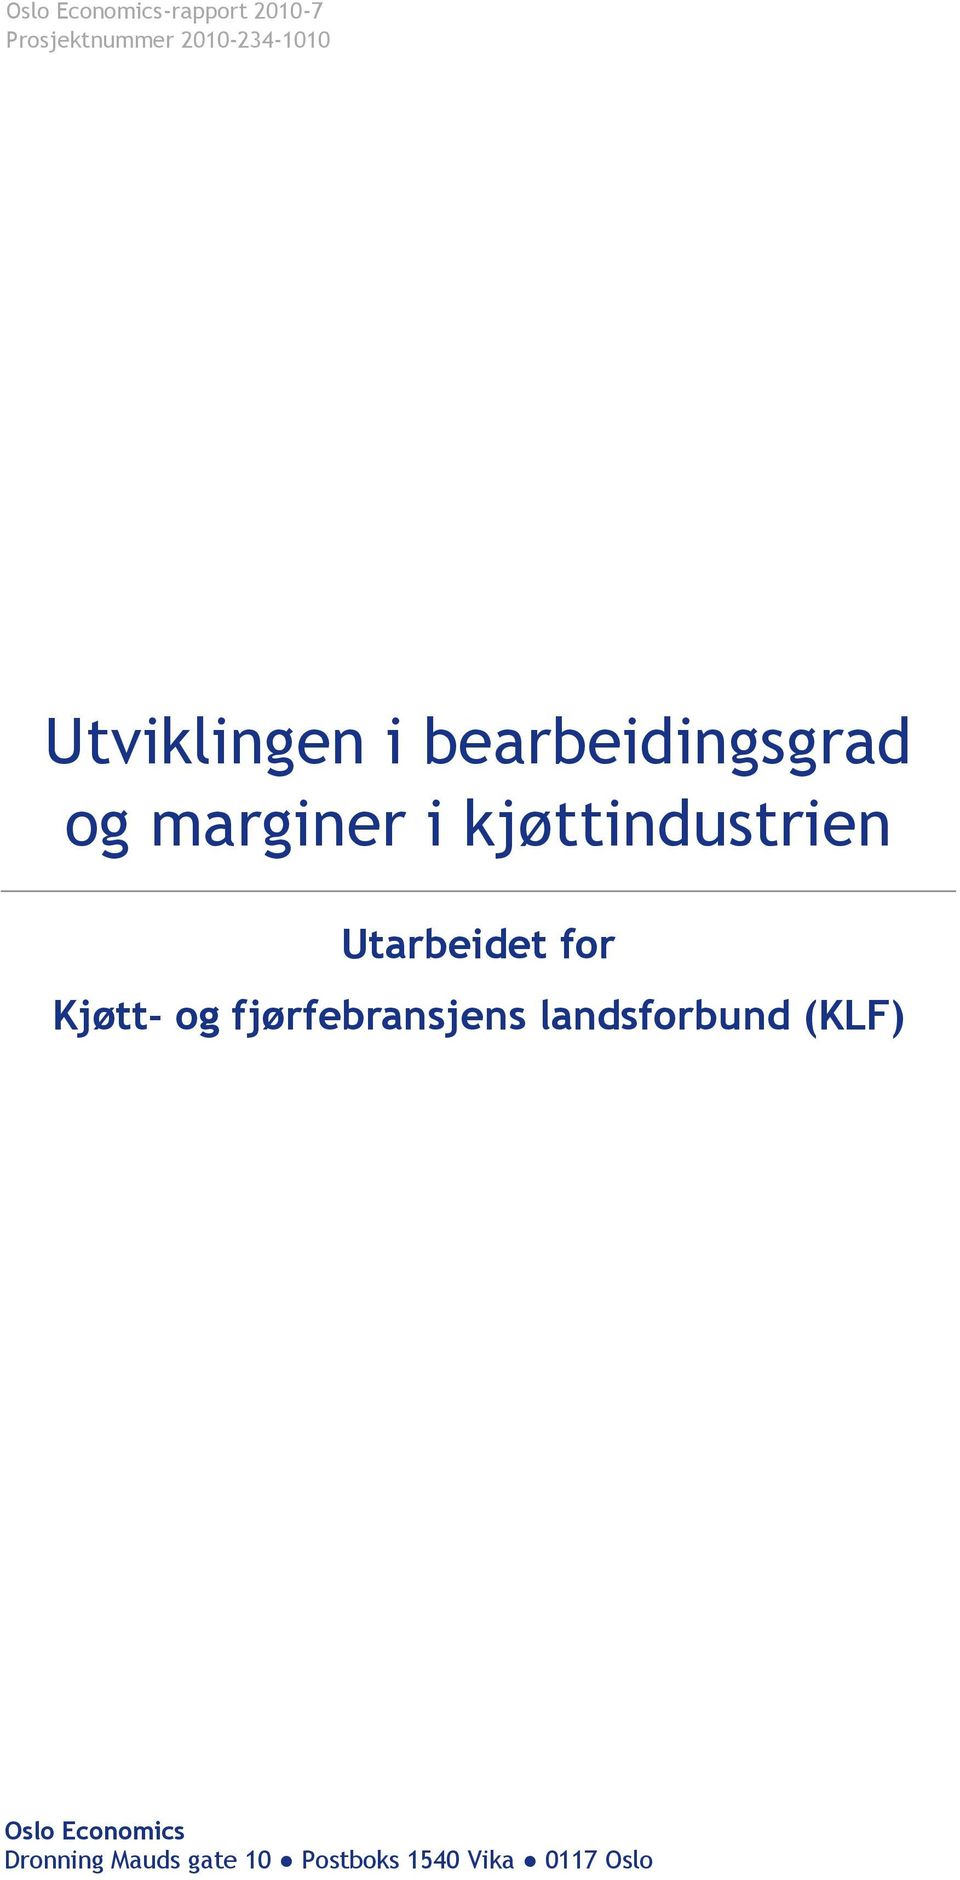 Utarbeidet for Kjøtt- og fjørfebransjens landsforbund (KLF)